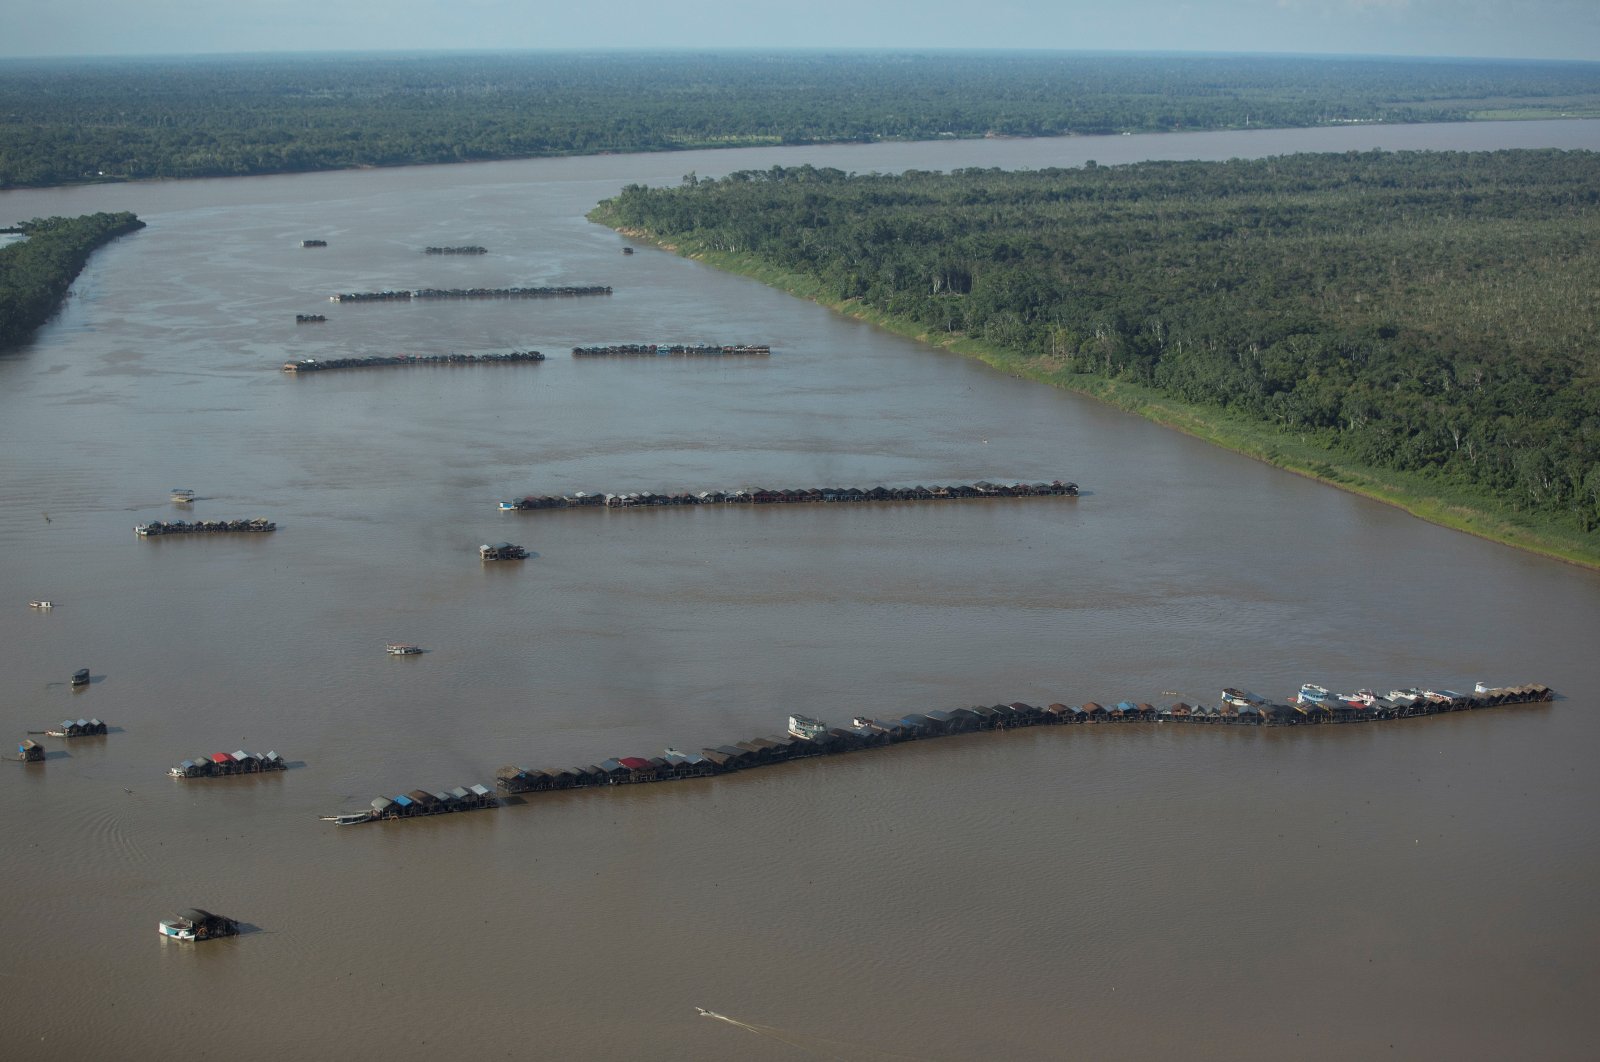 Ratusan penambang ilegal berduyun-duyun ke anak sungai Amazon dalam demam emas